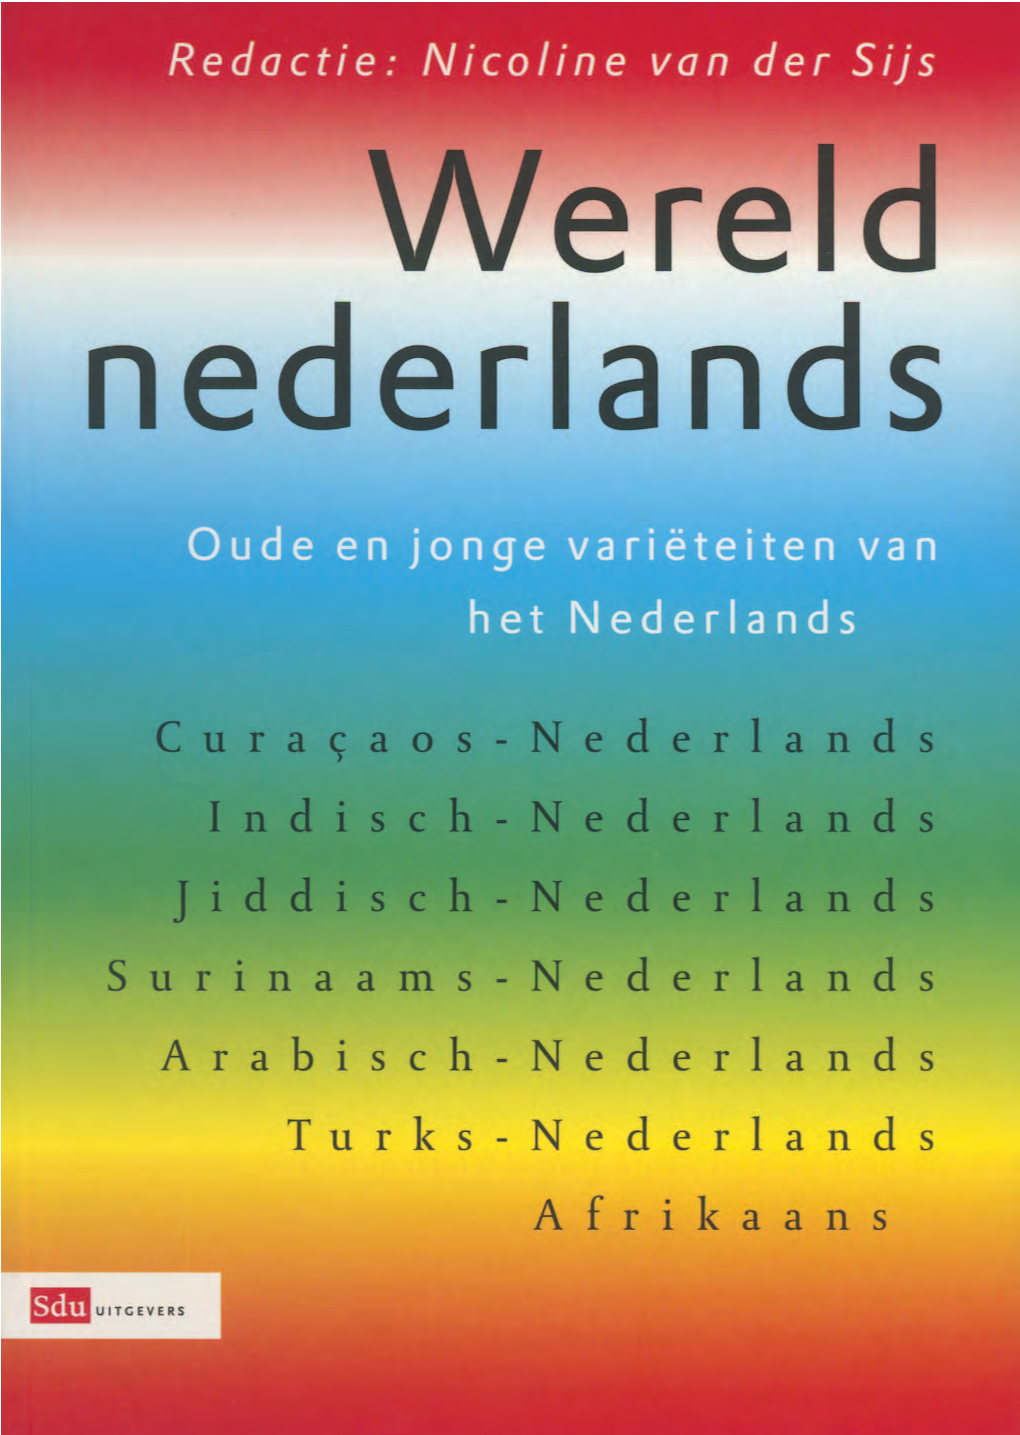 Curacaos-Nederlands Indisch-Nederlands Jiddisch-Nederlands Surinaams-Nederlands Arabisch-Nederlands Turks-Nederlands Afrikaans